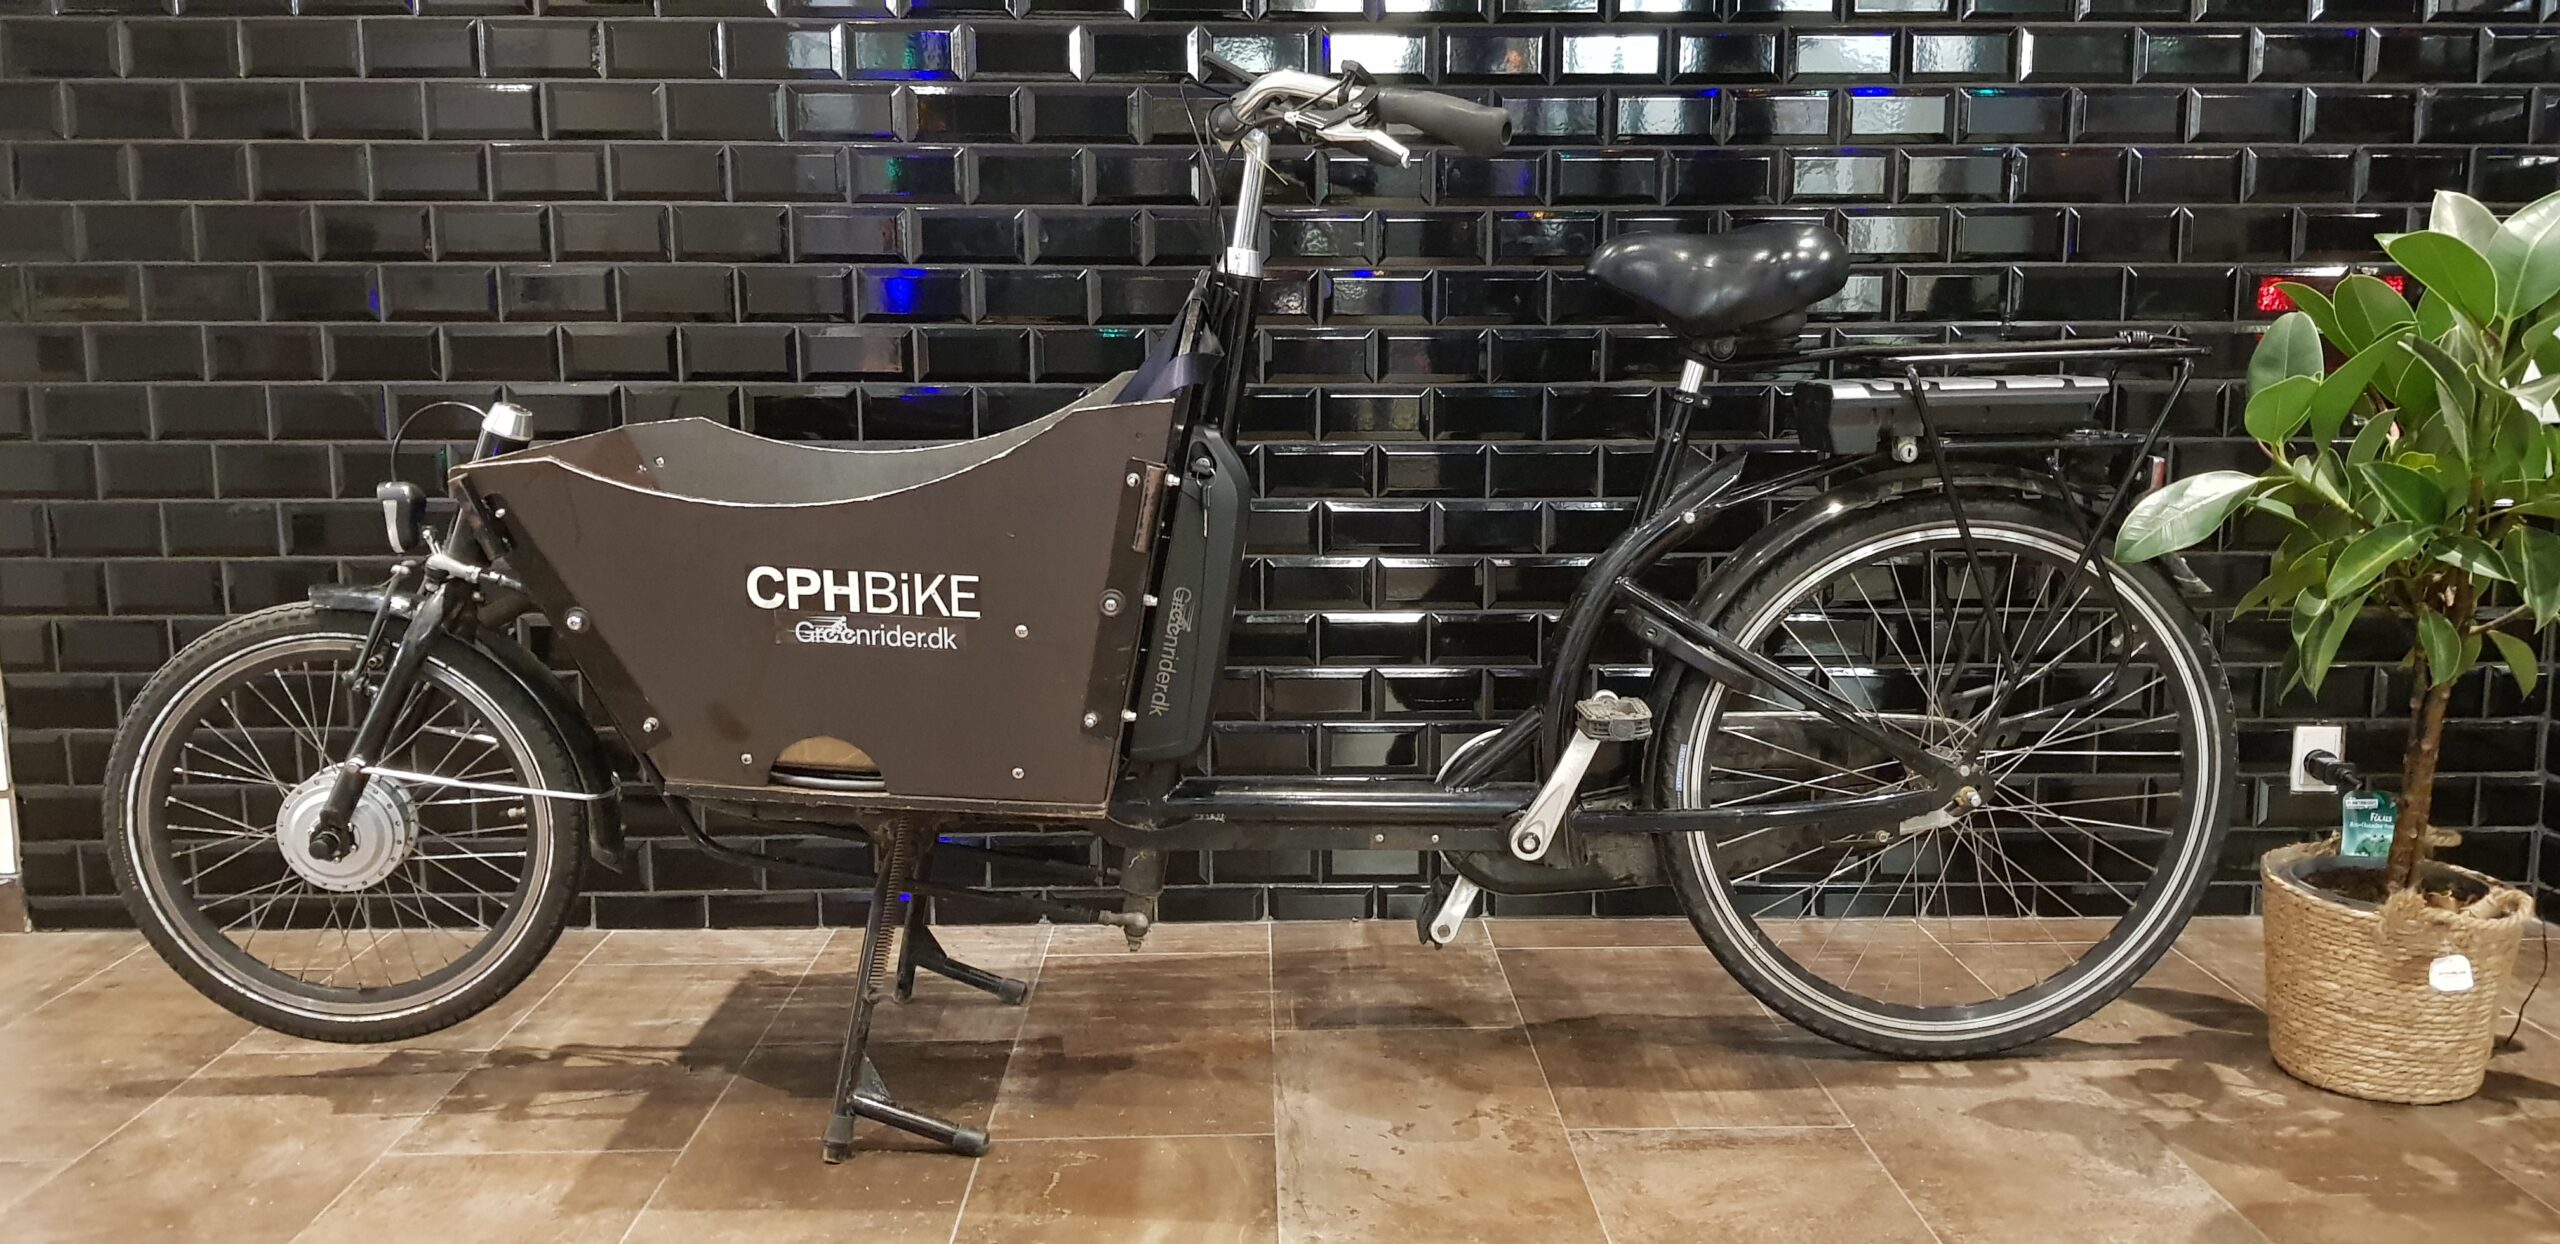 CPH bike elcykel kit scaled